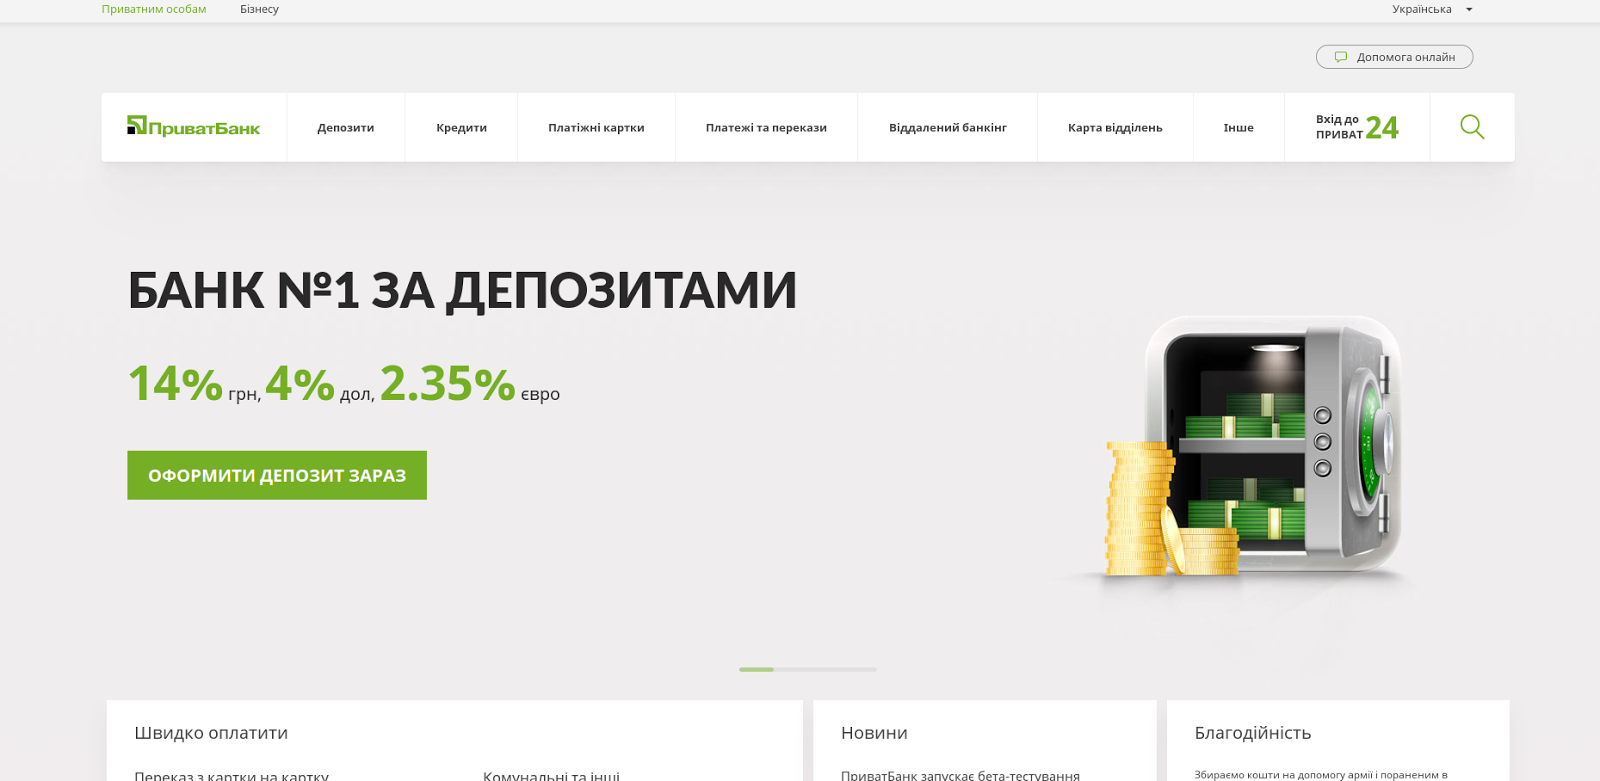 ПРИВАТБАНК. ПРИВАТБАНК график. Сайт банка украины